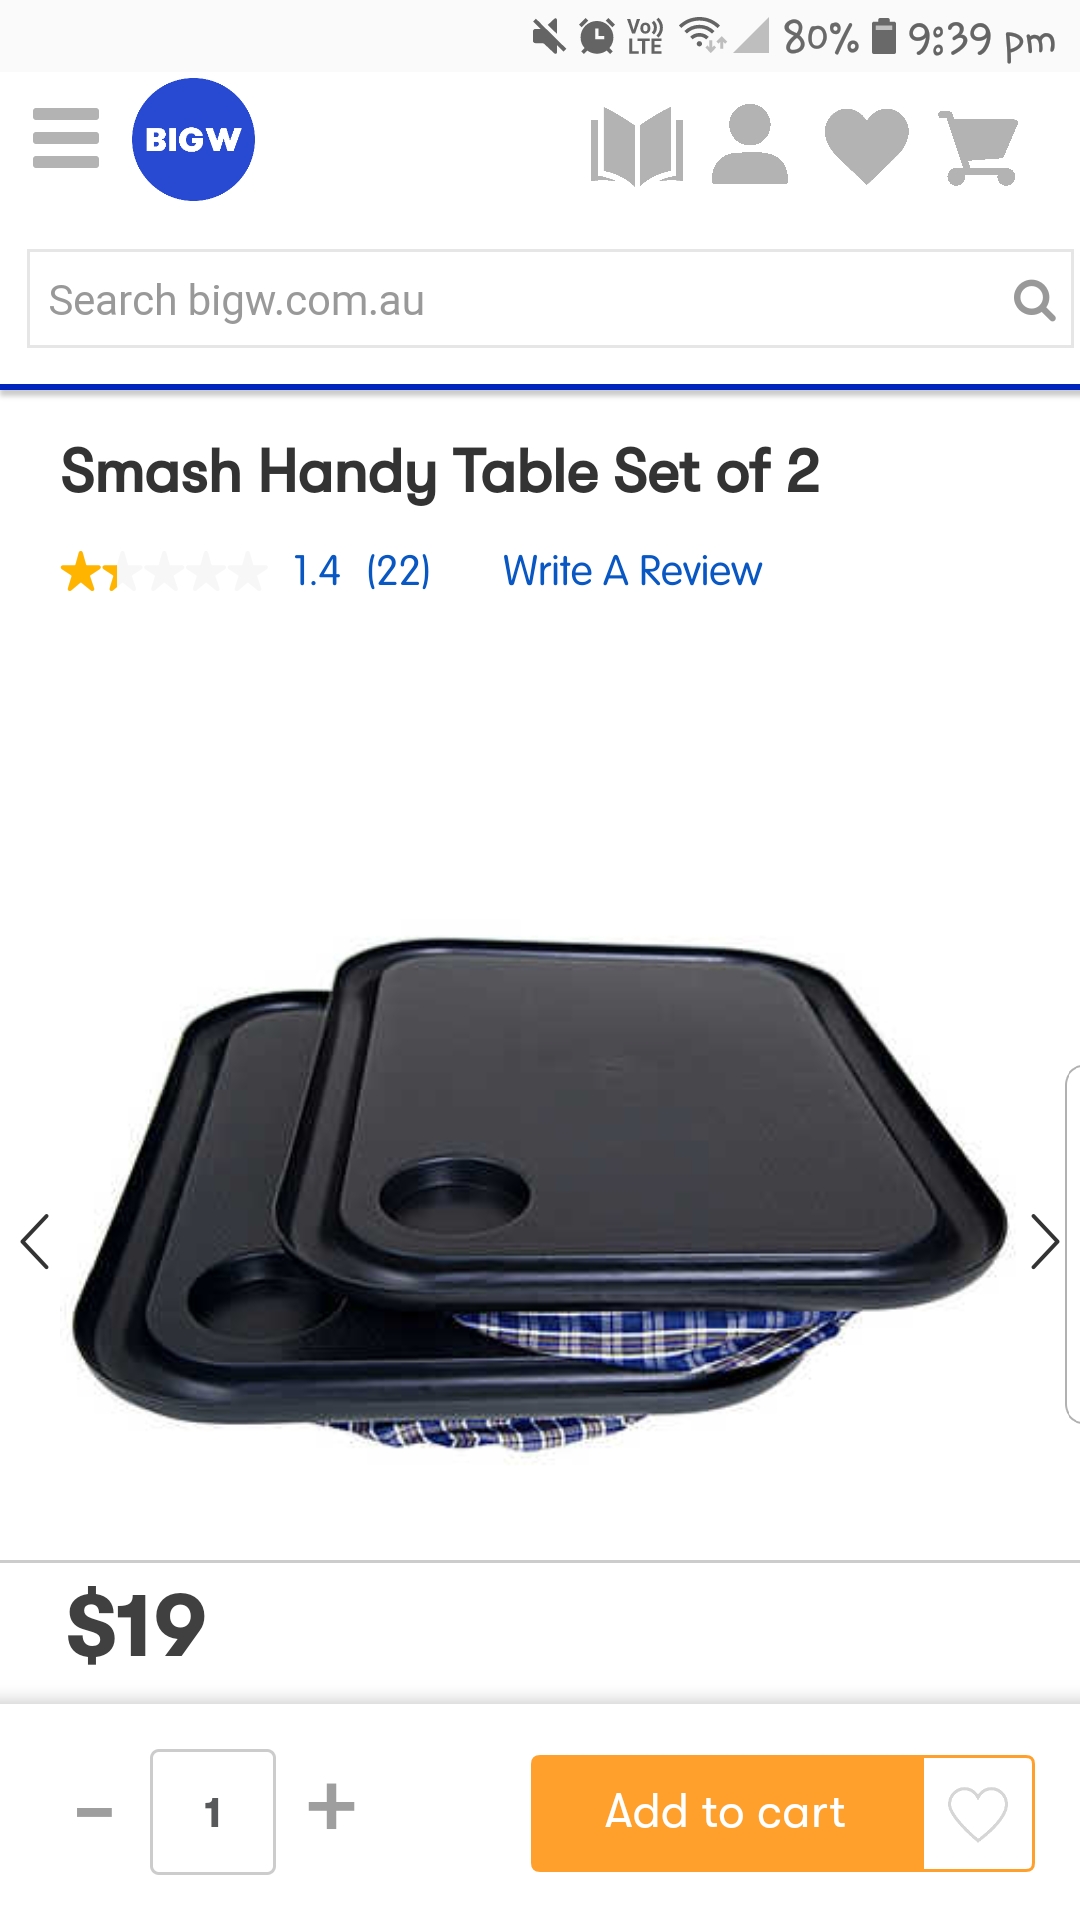 Smash handy table set